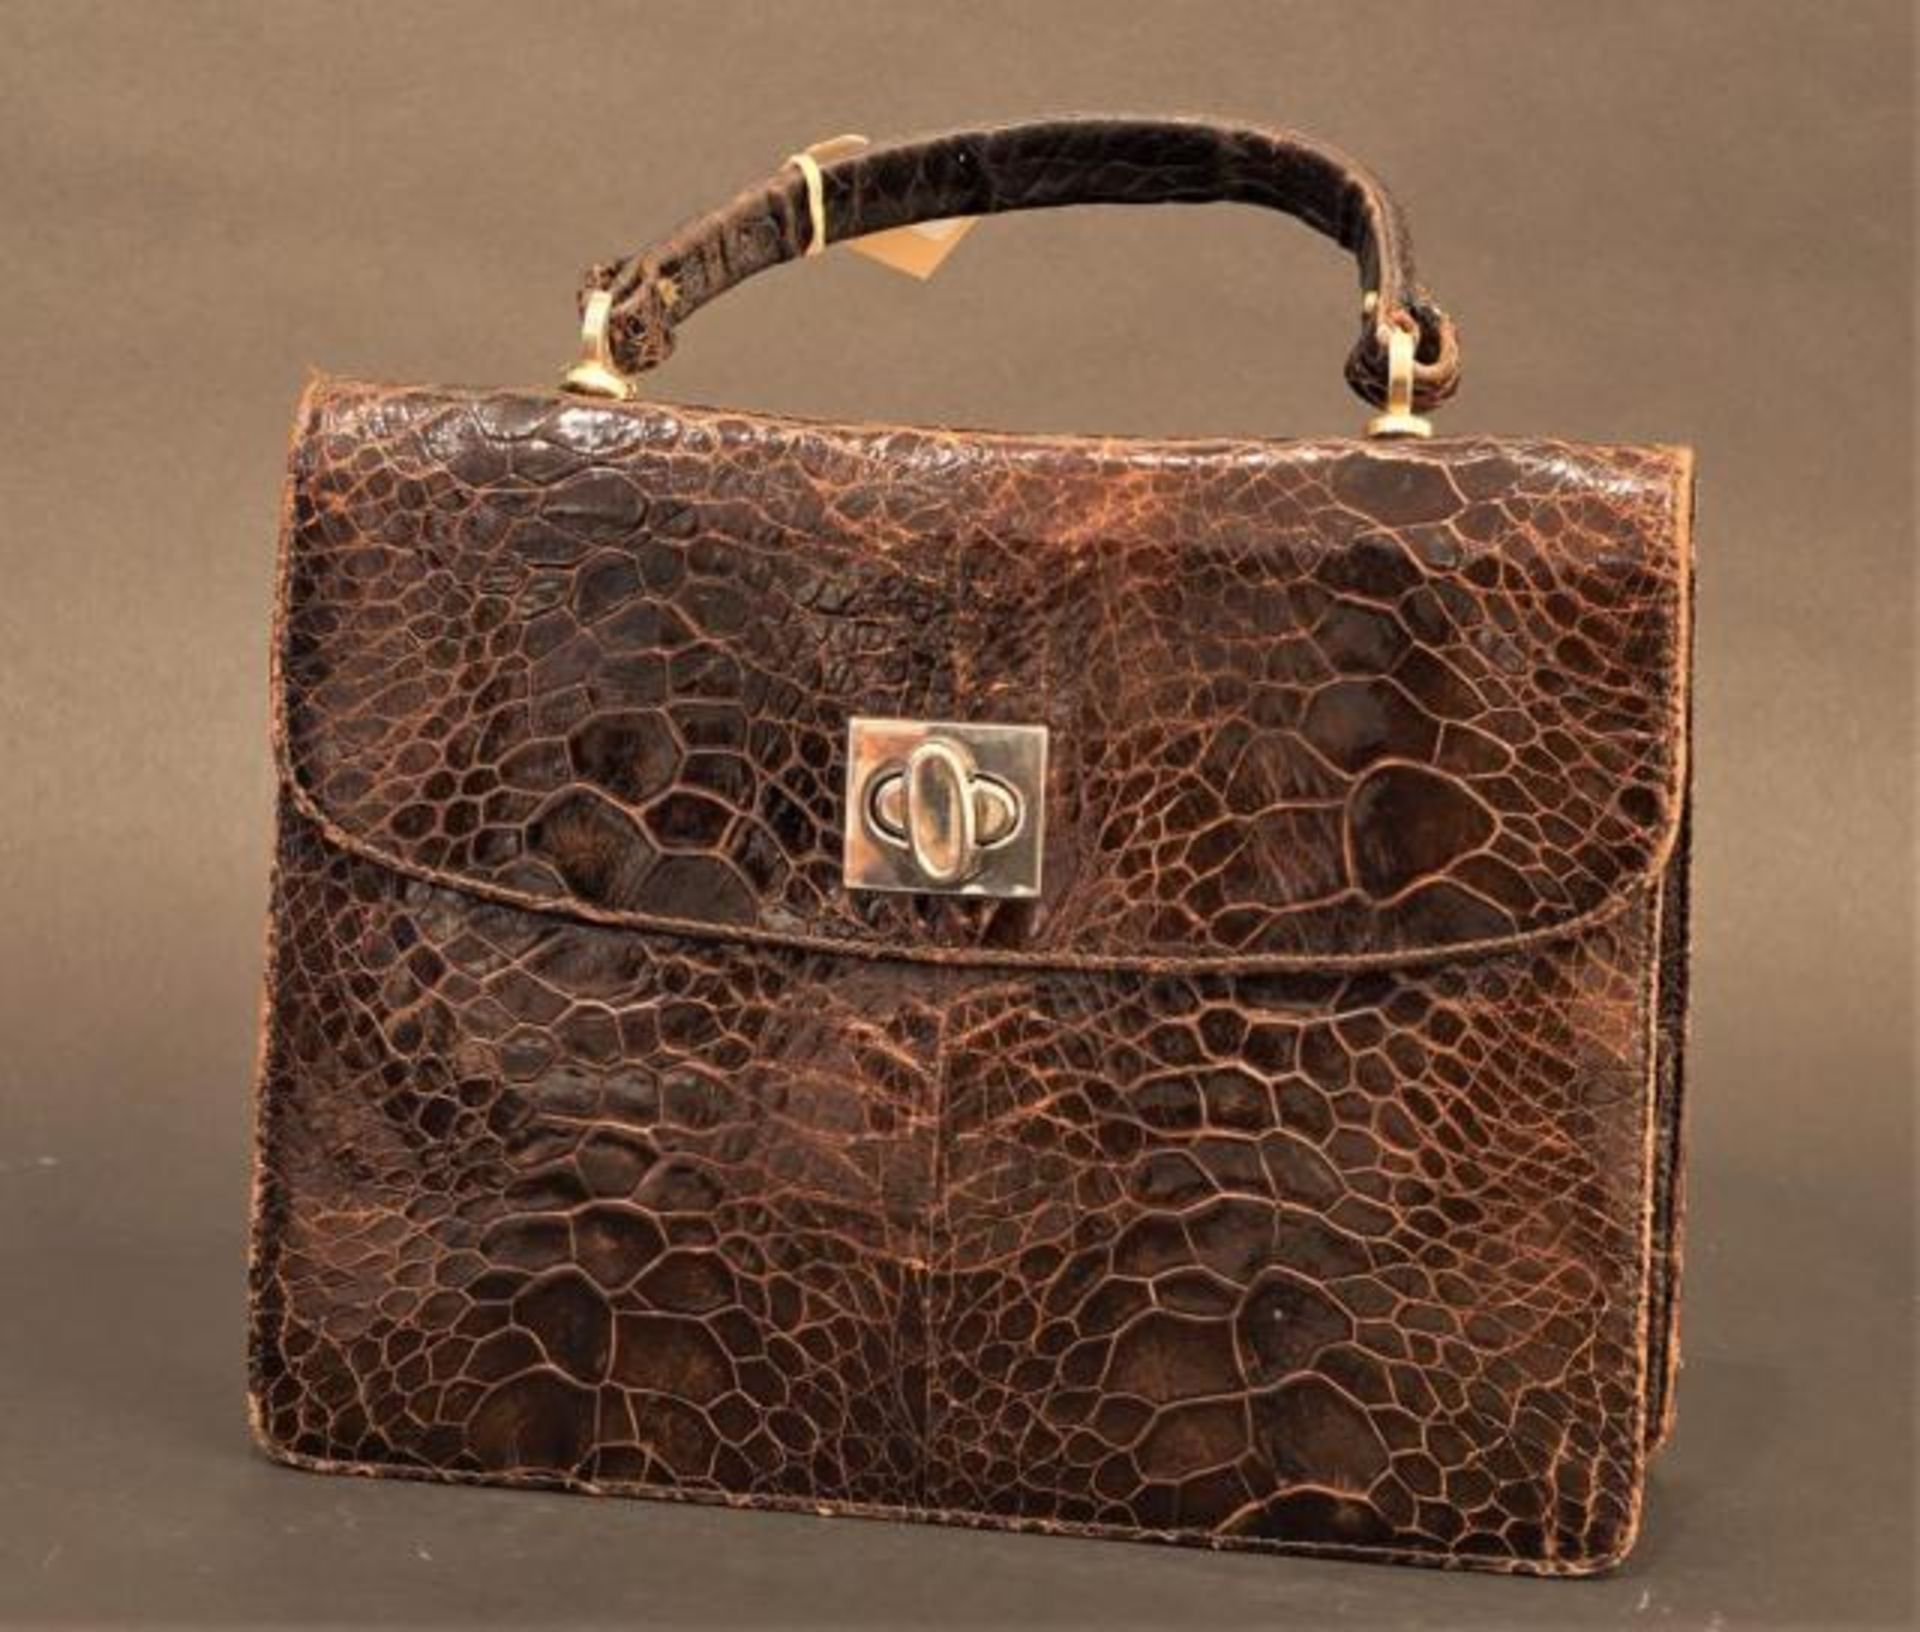 Vintage croco handbag, wear and tear